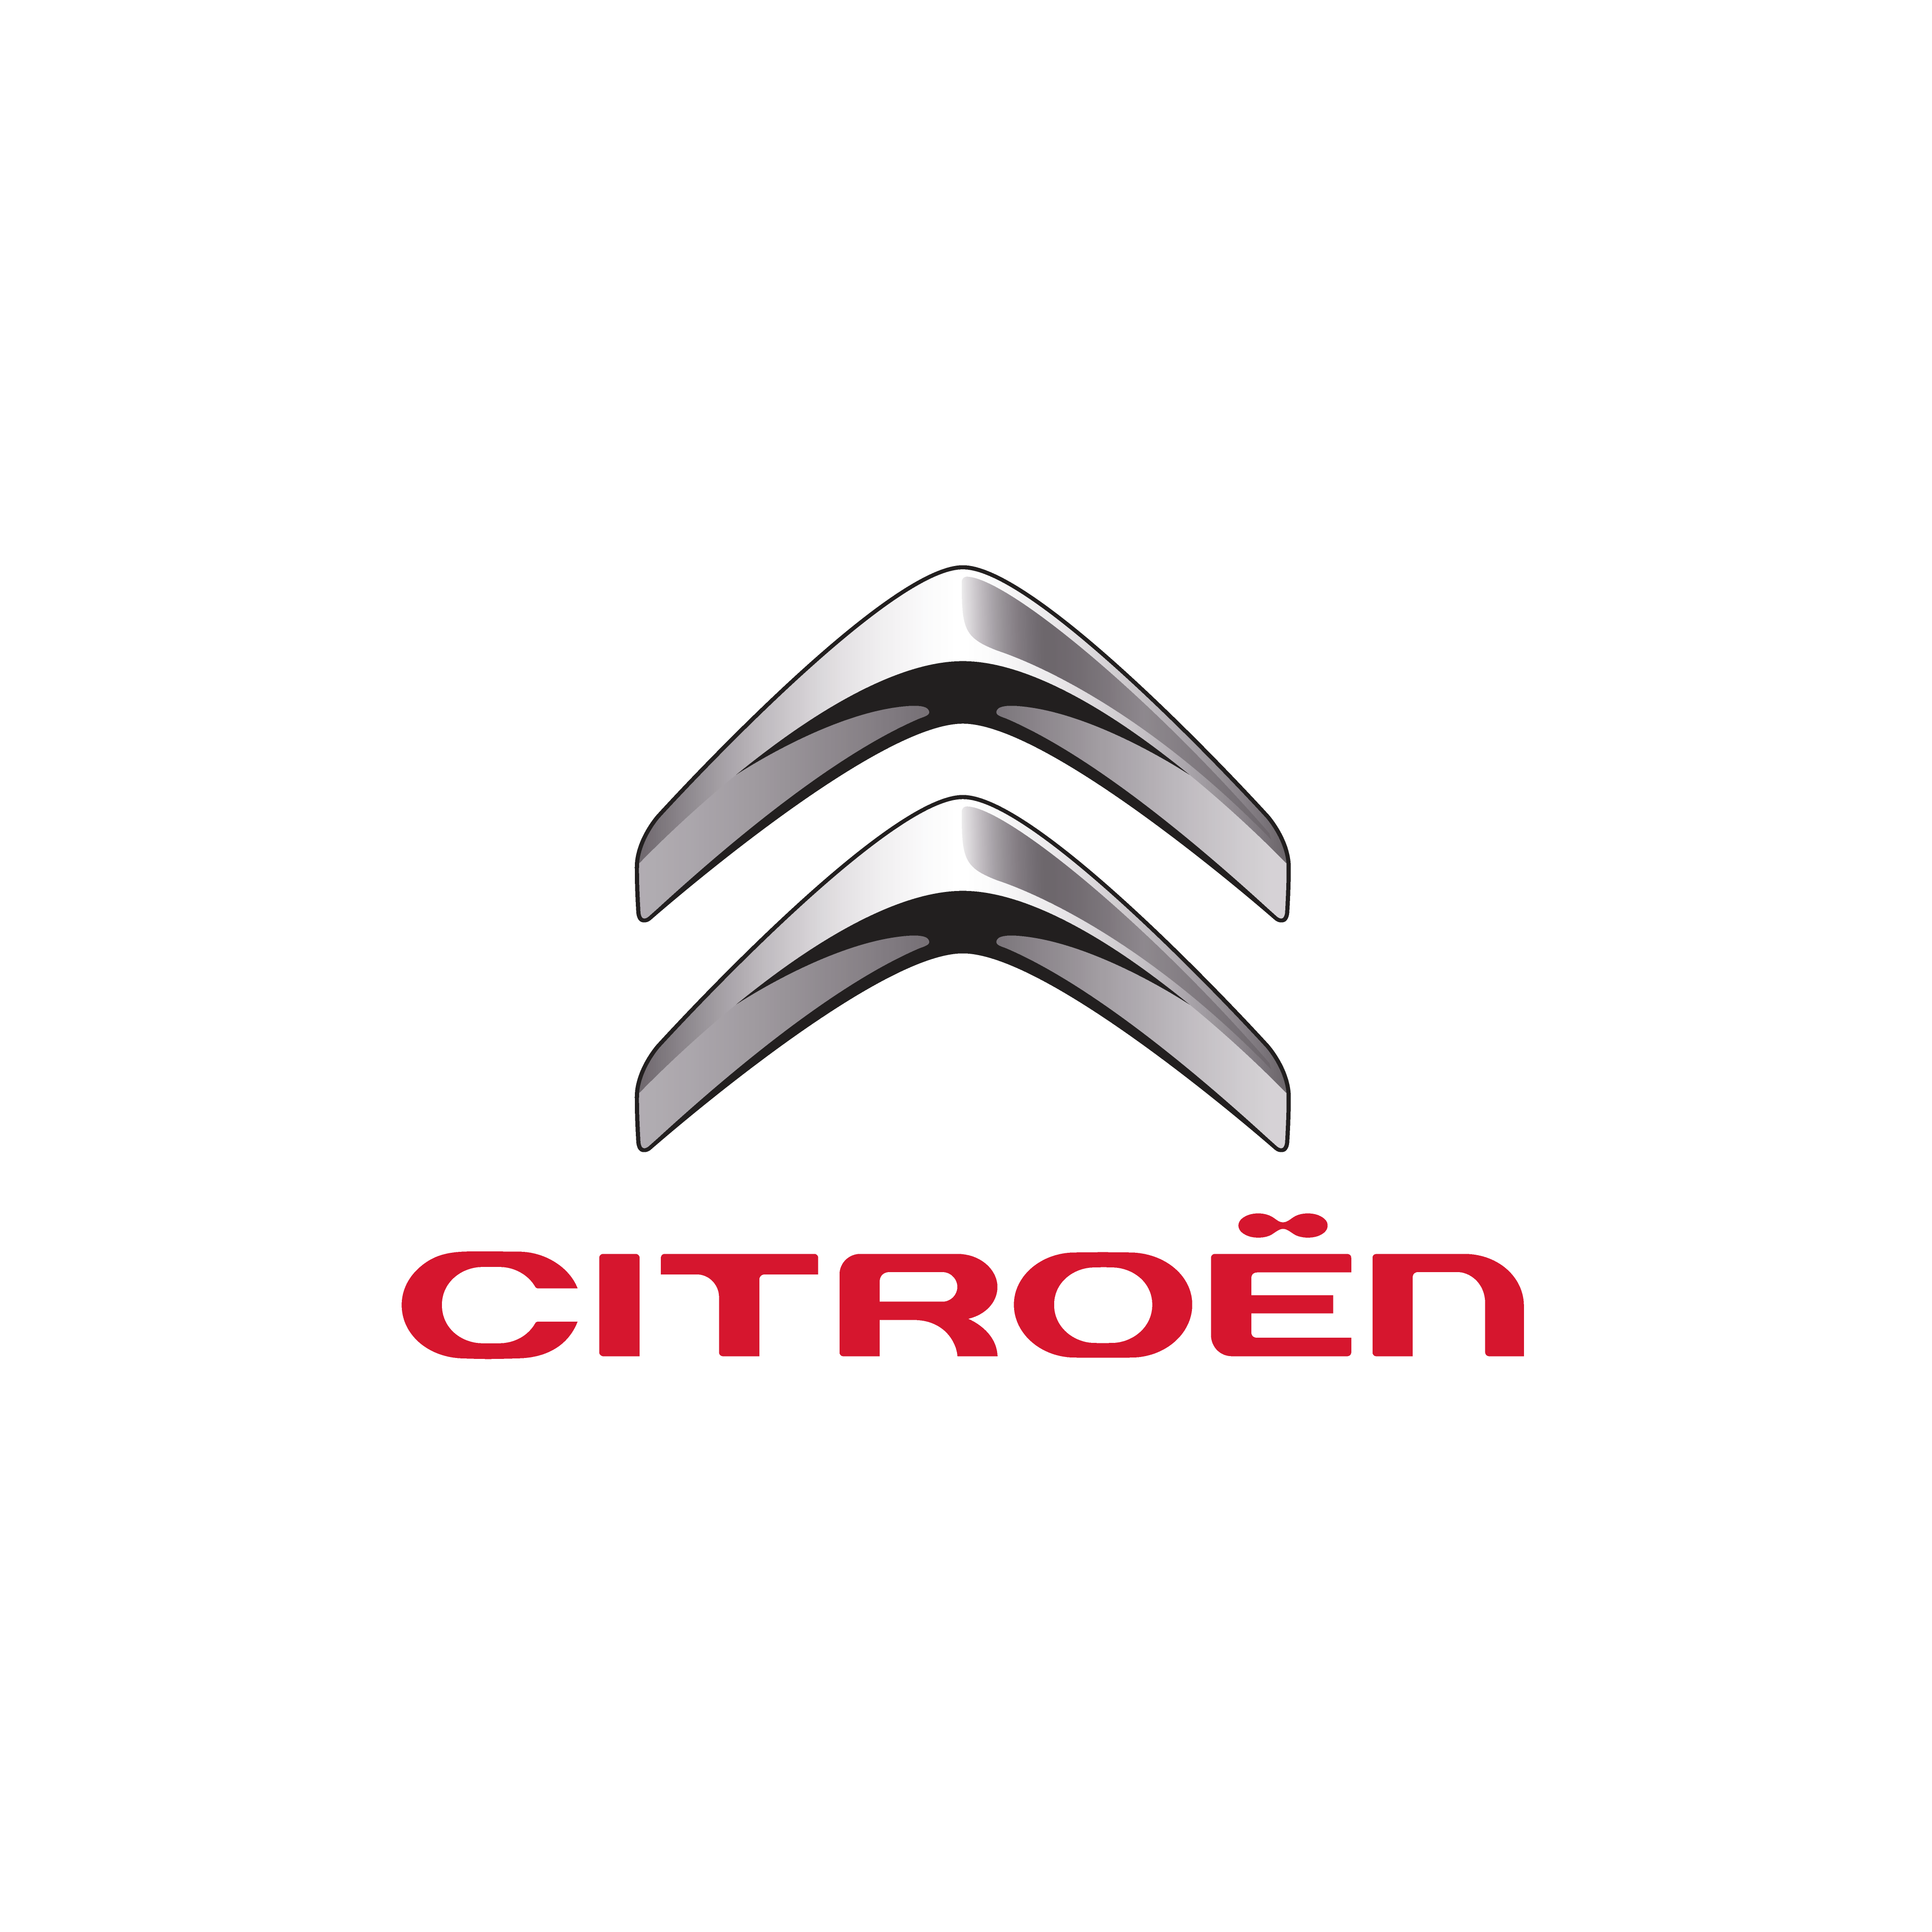 citroen logo 0 - Citroën Logo